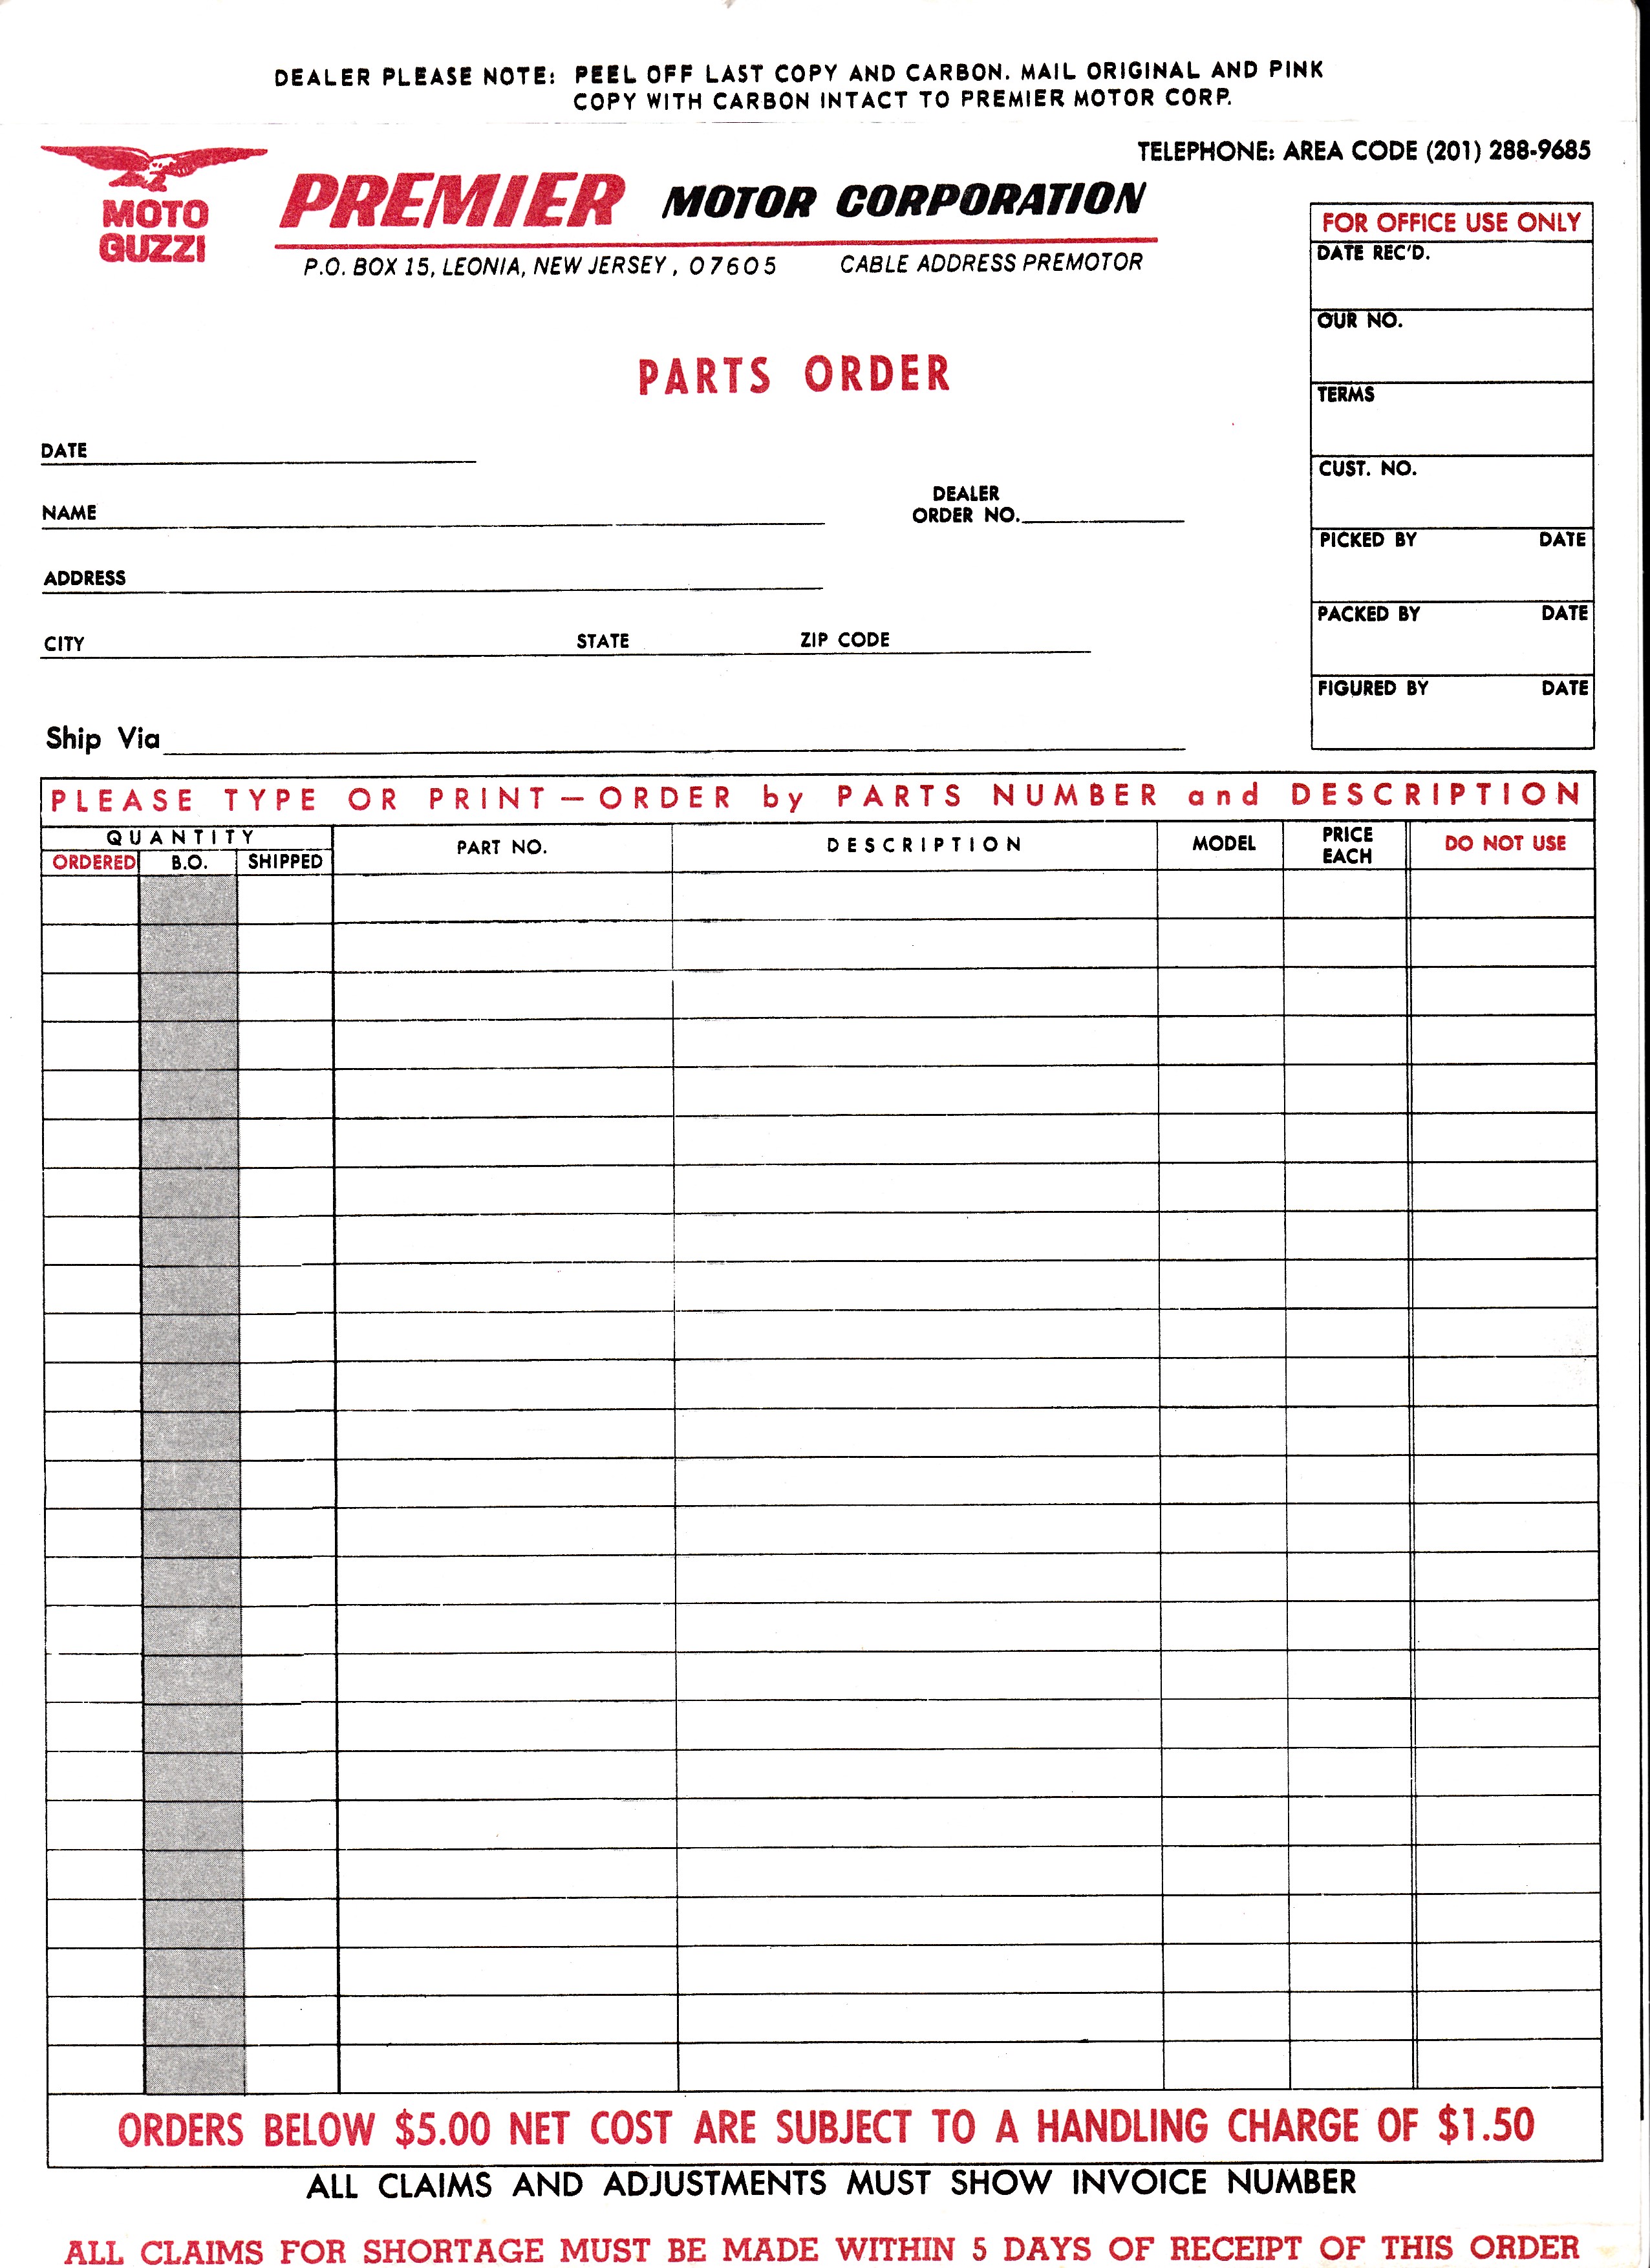 Premier Motor Corporation parts order form 1.